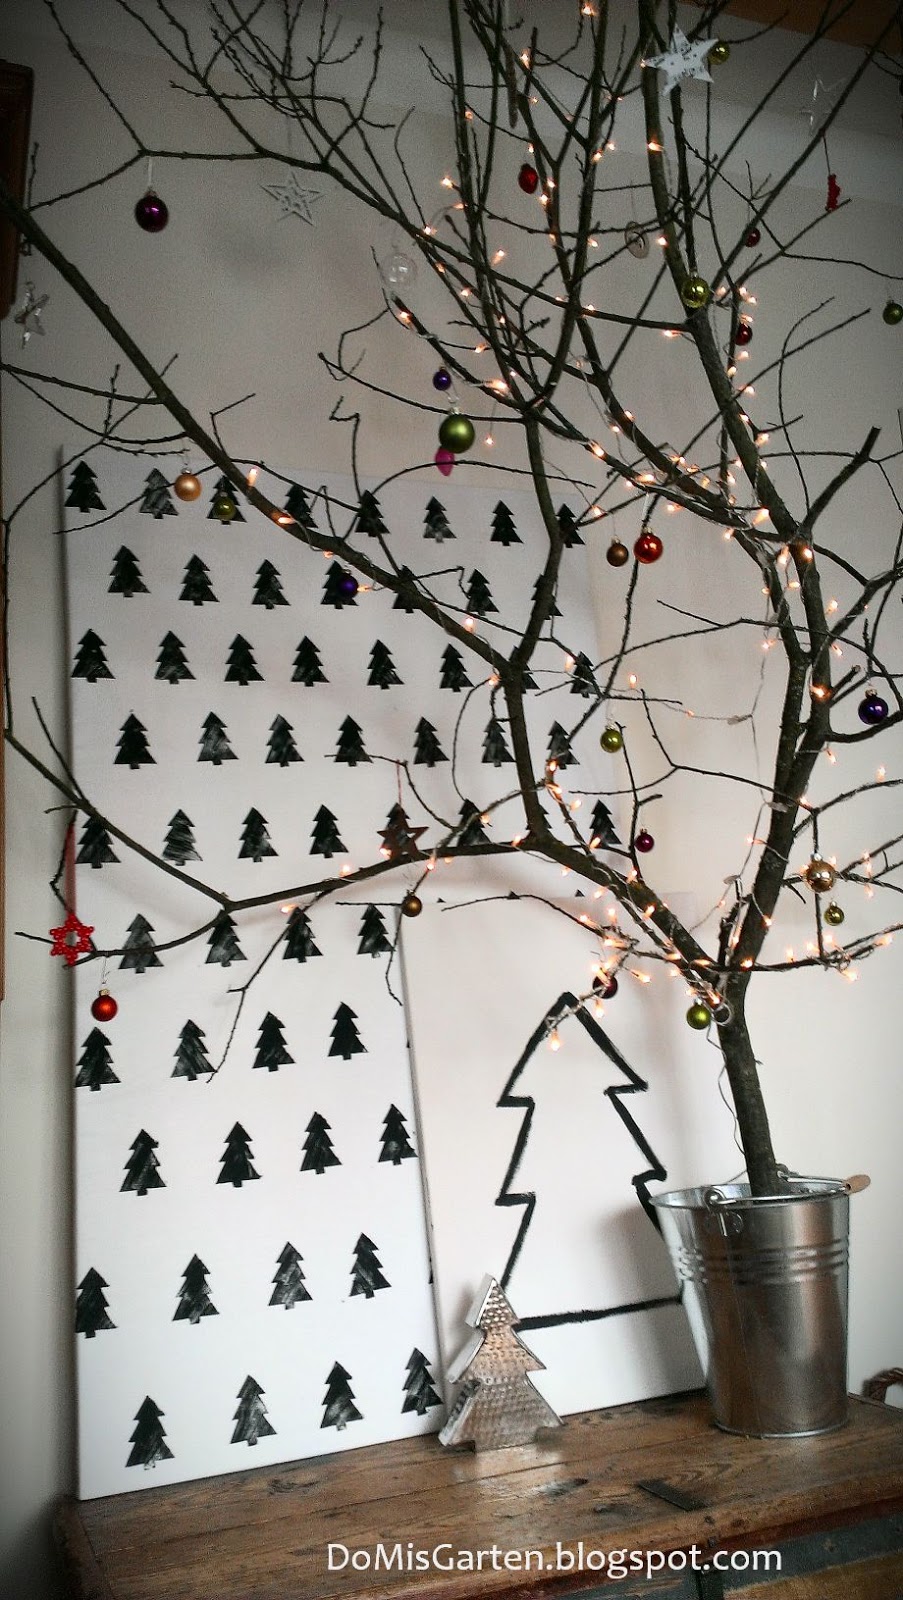 Do|Mi|s Garten: Weihnachtsbaum mit DIY und Verlosung von Gartenbüchern